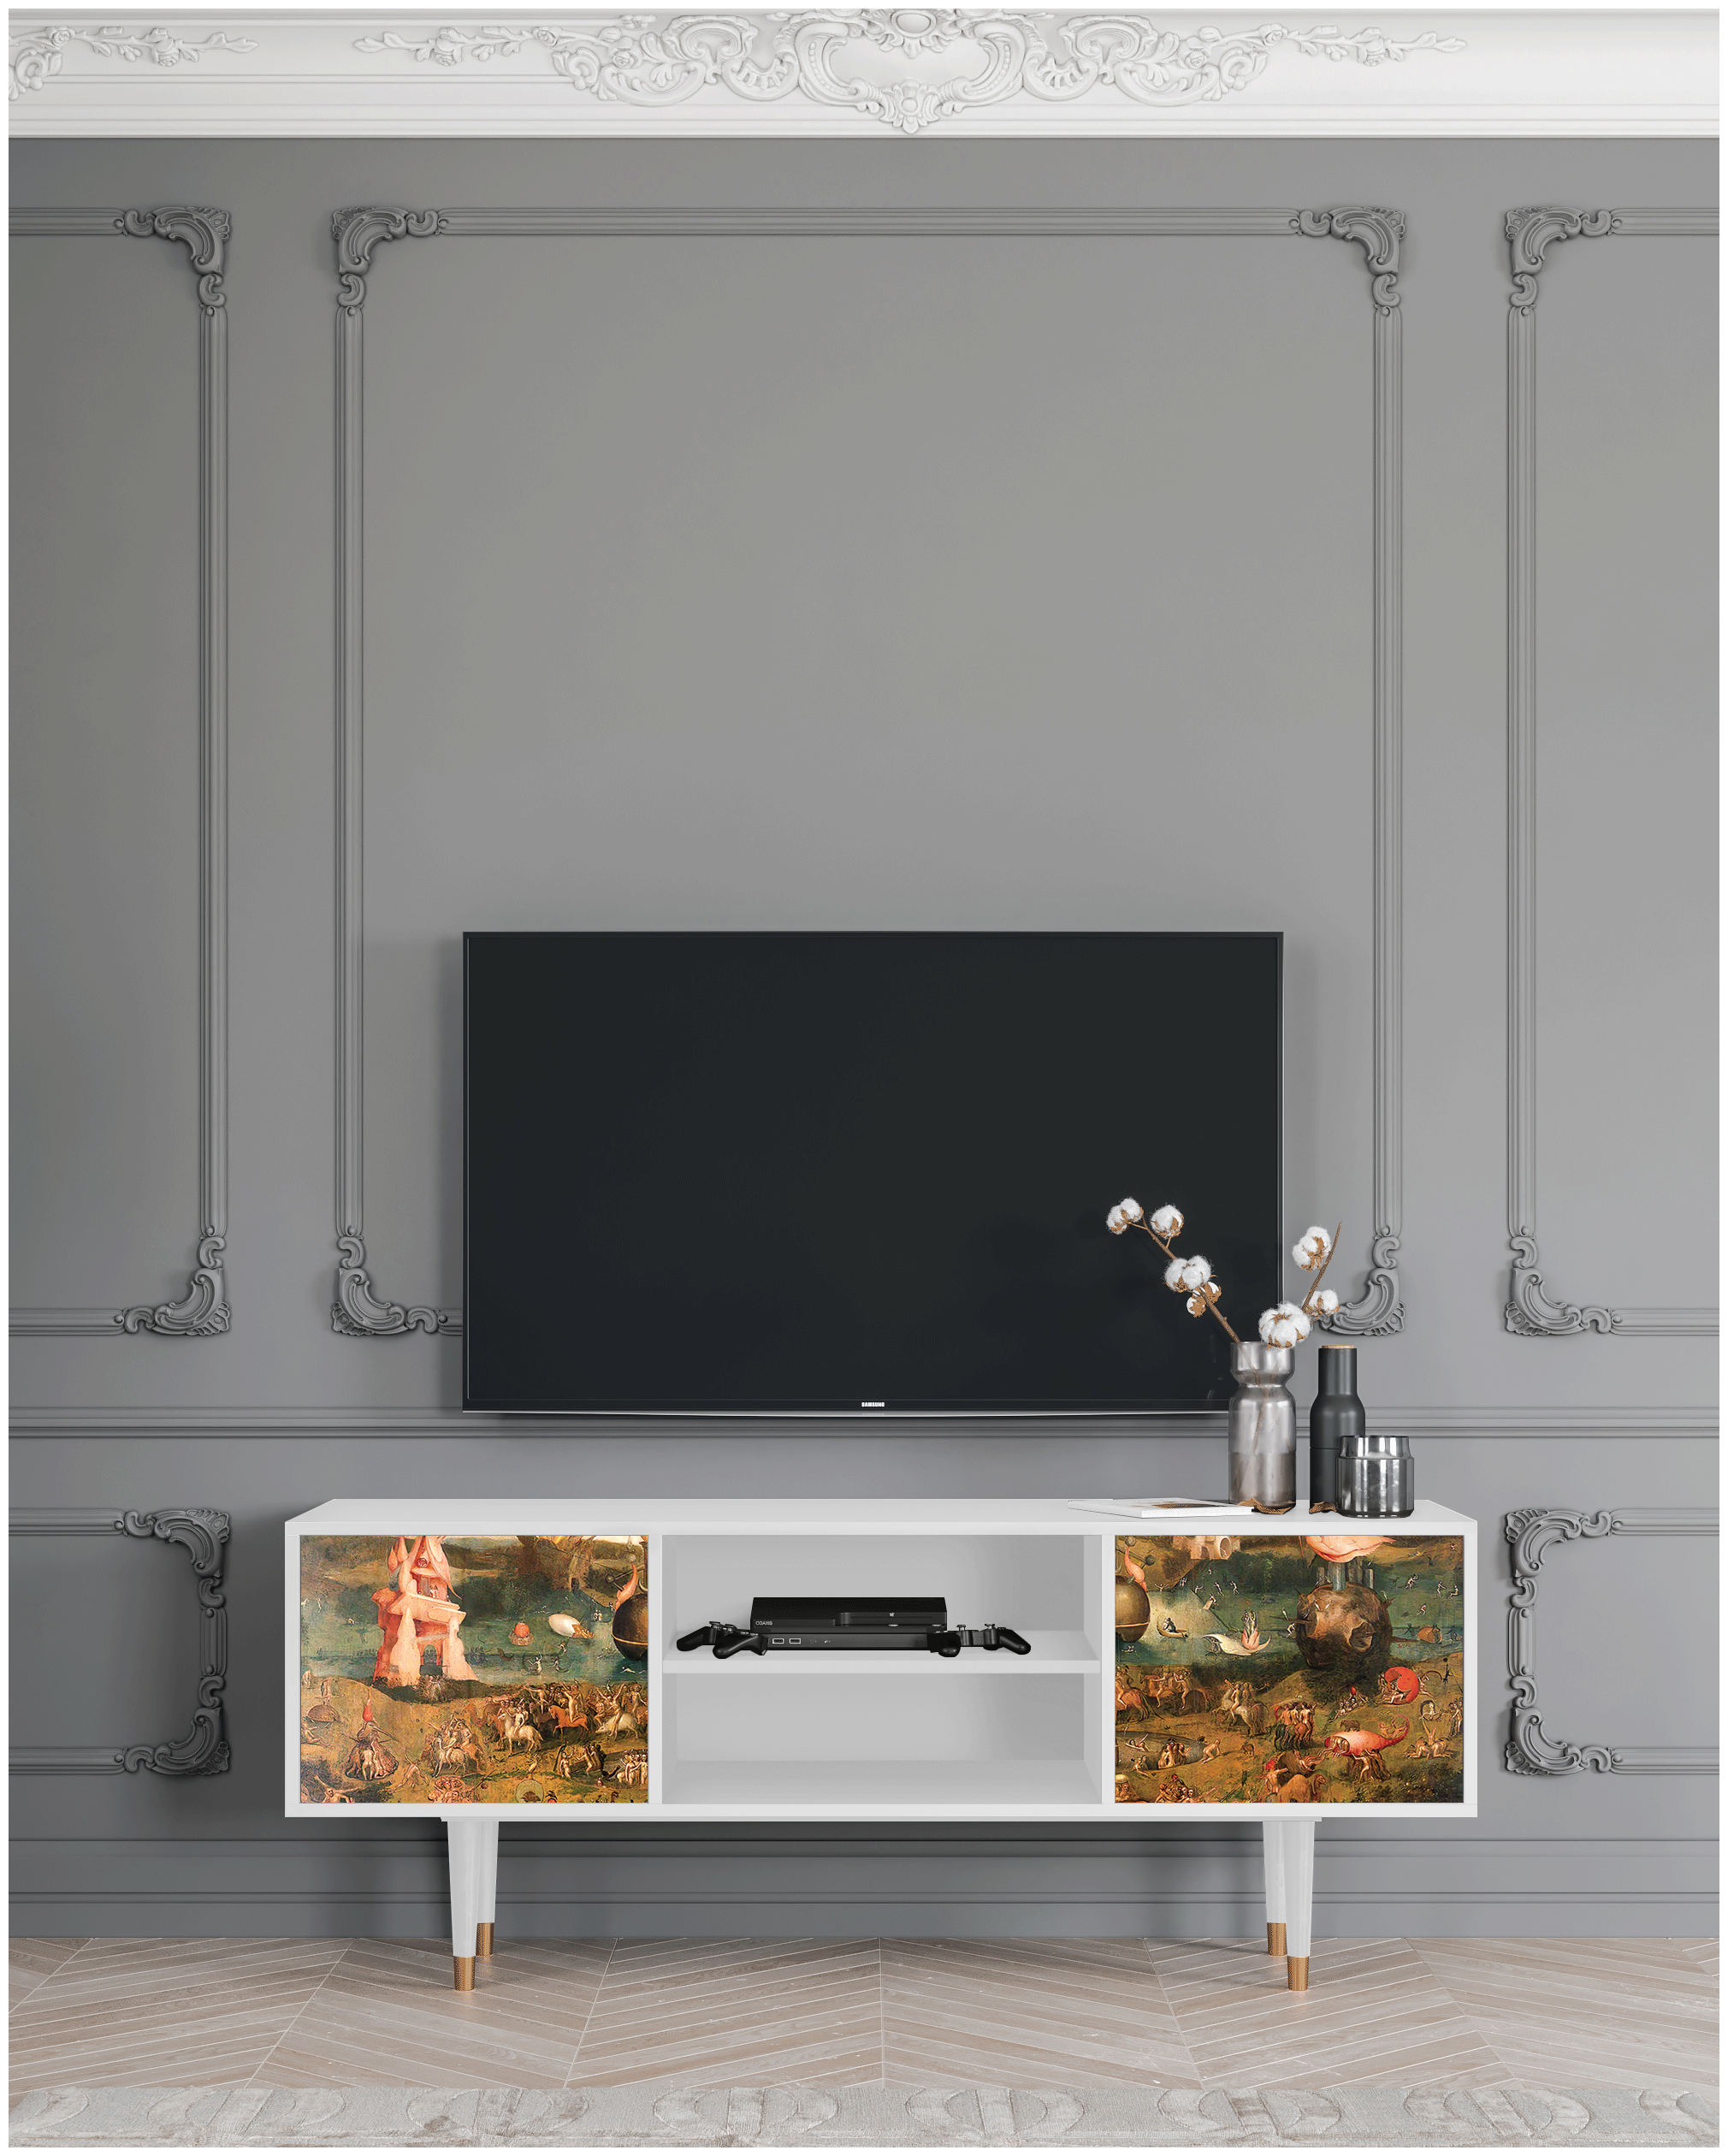 ТВ-Тумба - STORYZ - T2 Garden of Earthly Delights by Hieronymus Bosch, 170 x 69 x 48 см, Белый